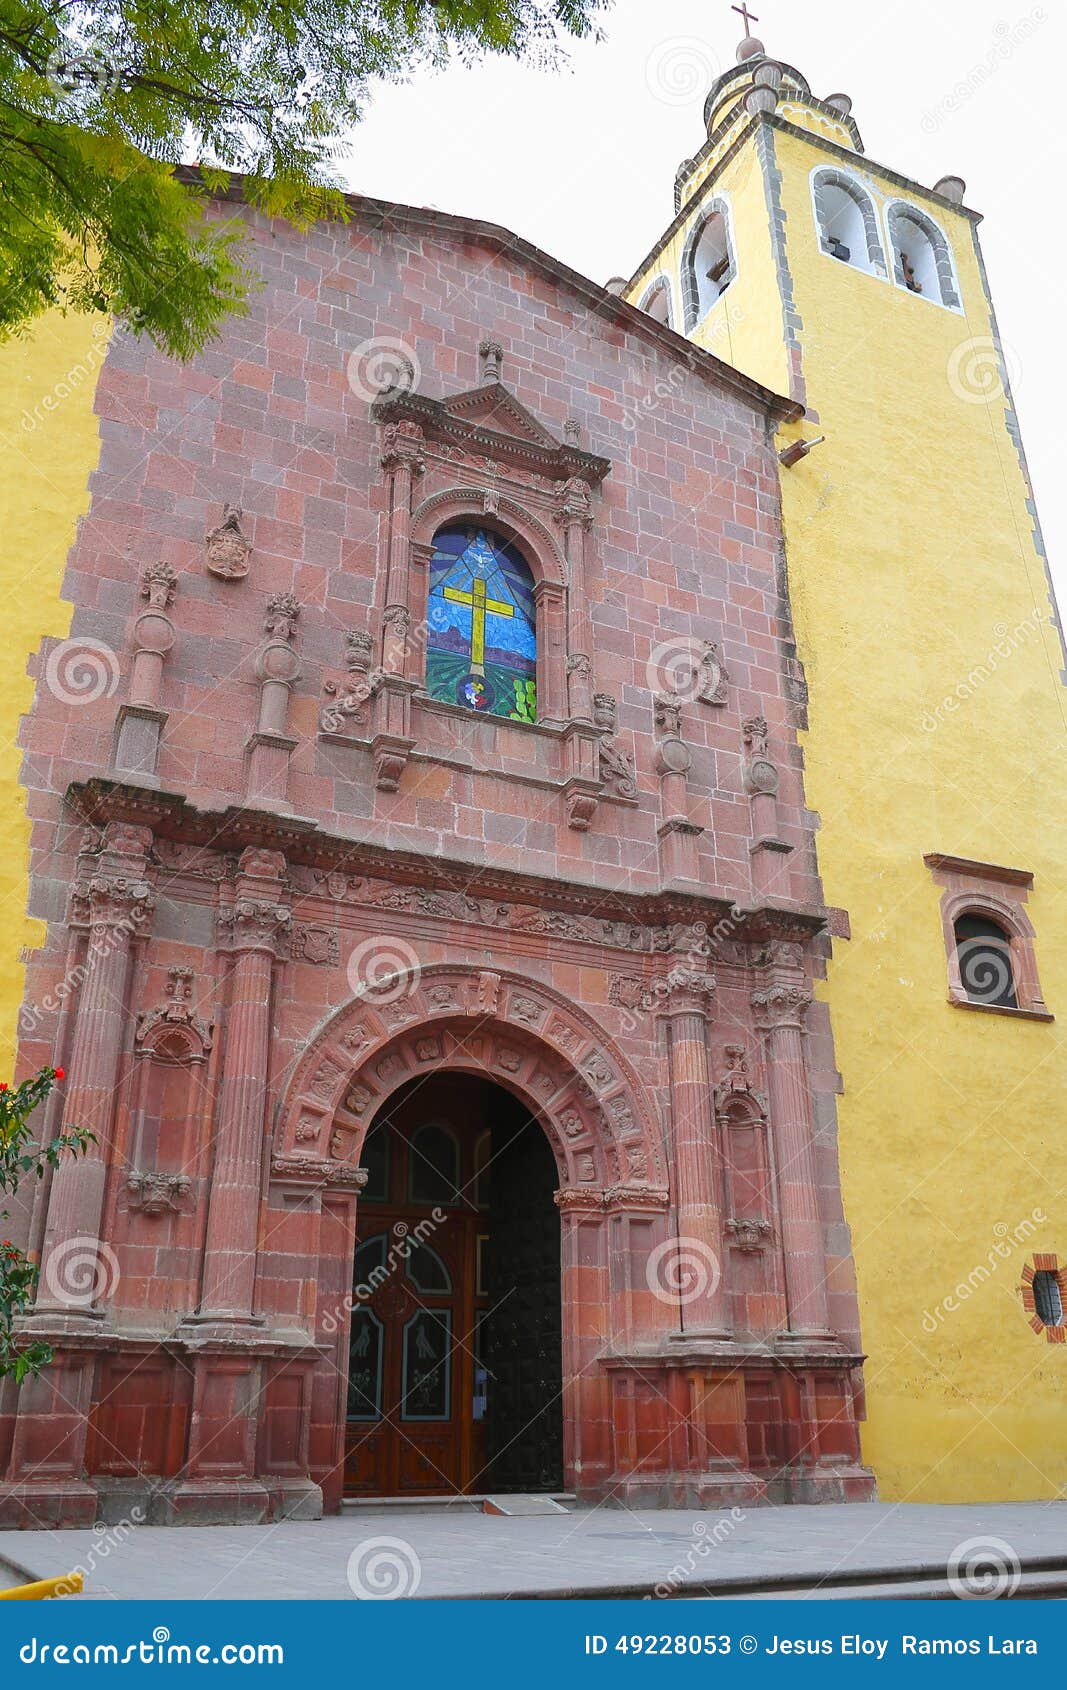 convent in ixmiquilpan hidalgo, mexico vii